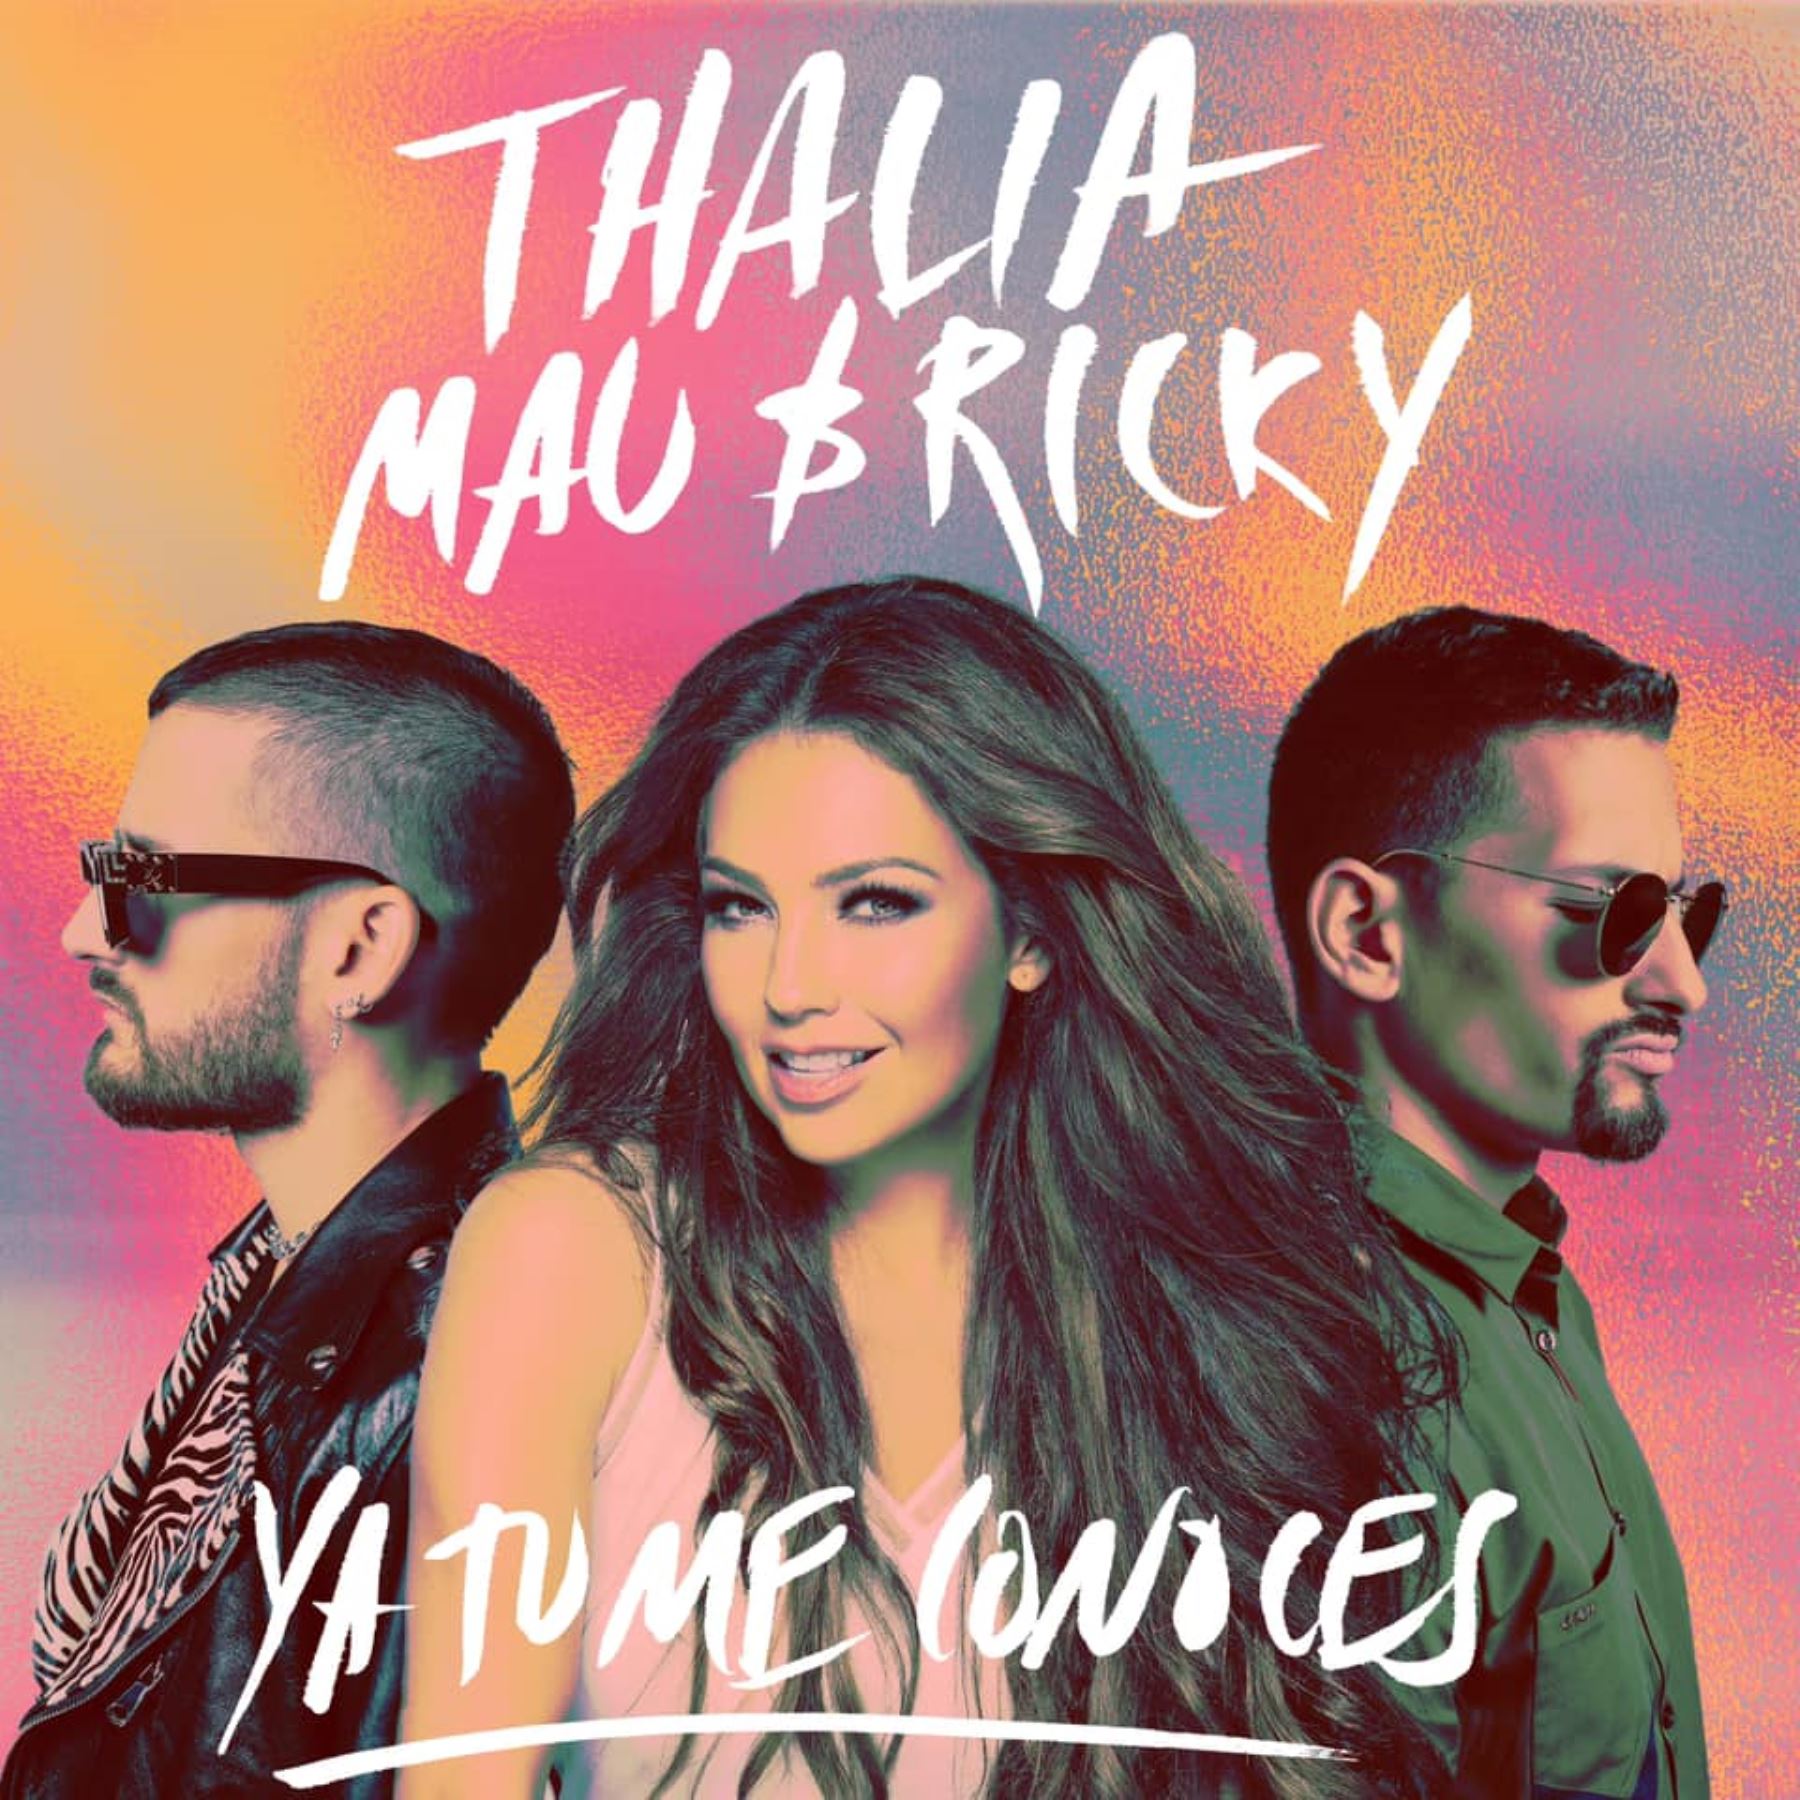 Thalía junto a Mau y Ricky lanzan tema "Tu ya me conoces".